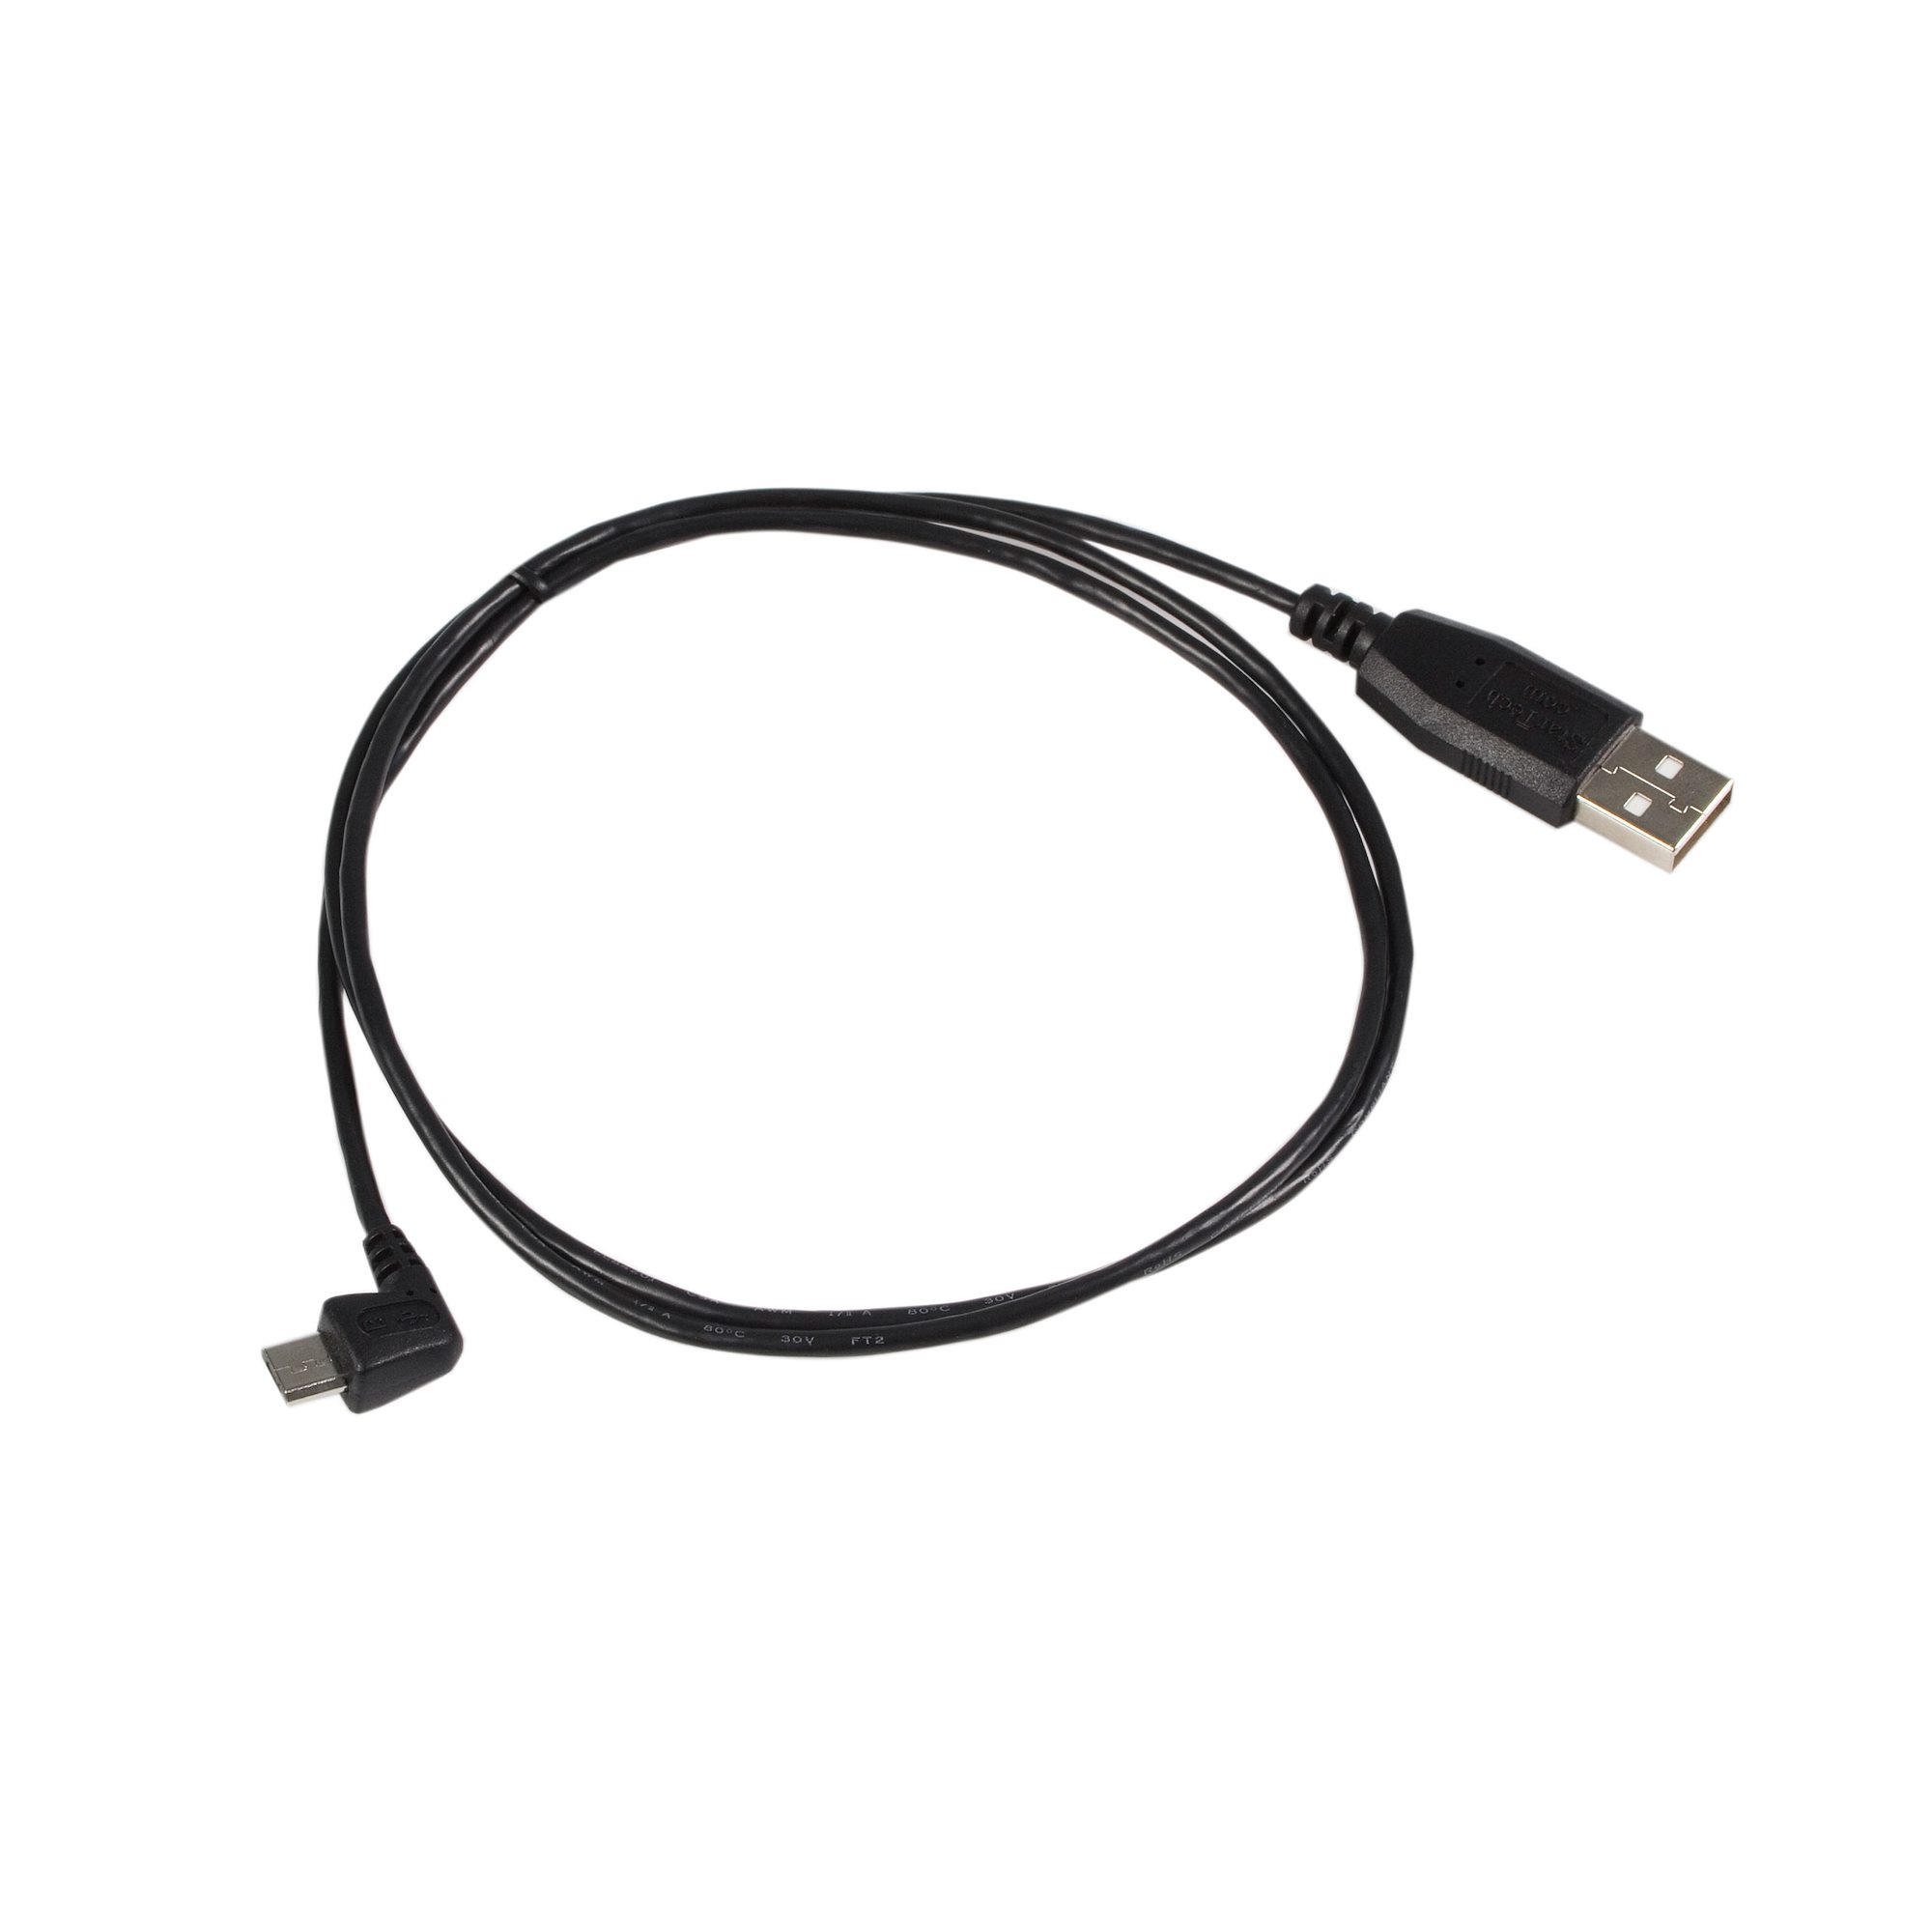 USBマイクロB ケーブル 1.8m Type-A(オス) - L型右向きMicro-B(オス)